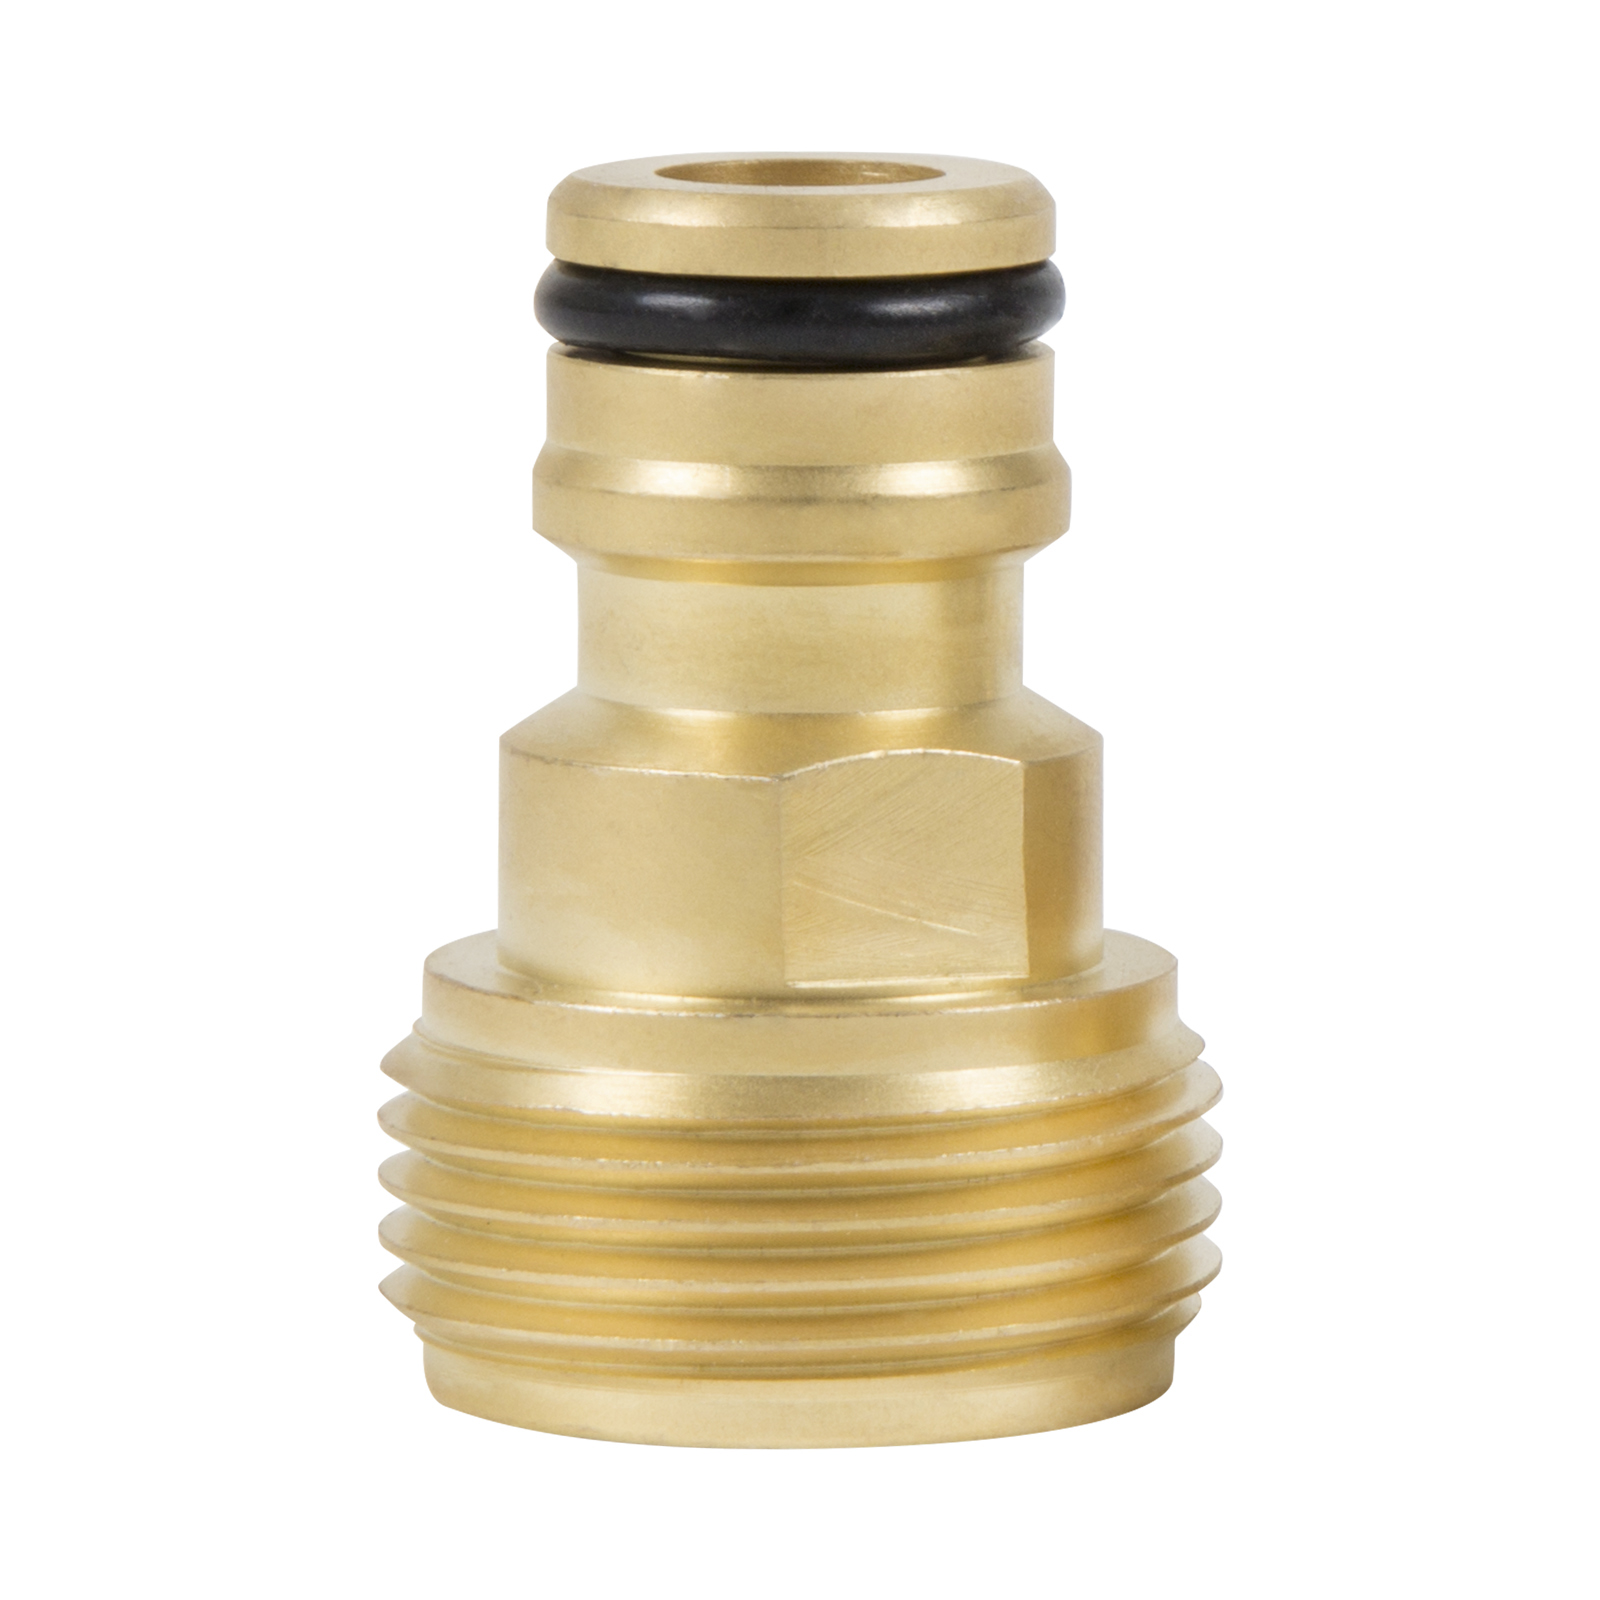 12mm Brass Sprinkler Adaptor - Nylex